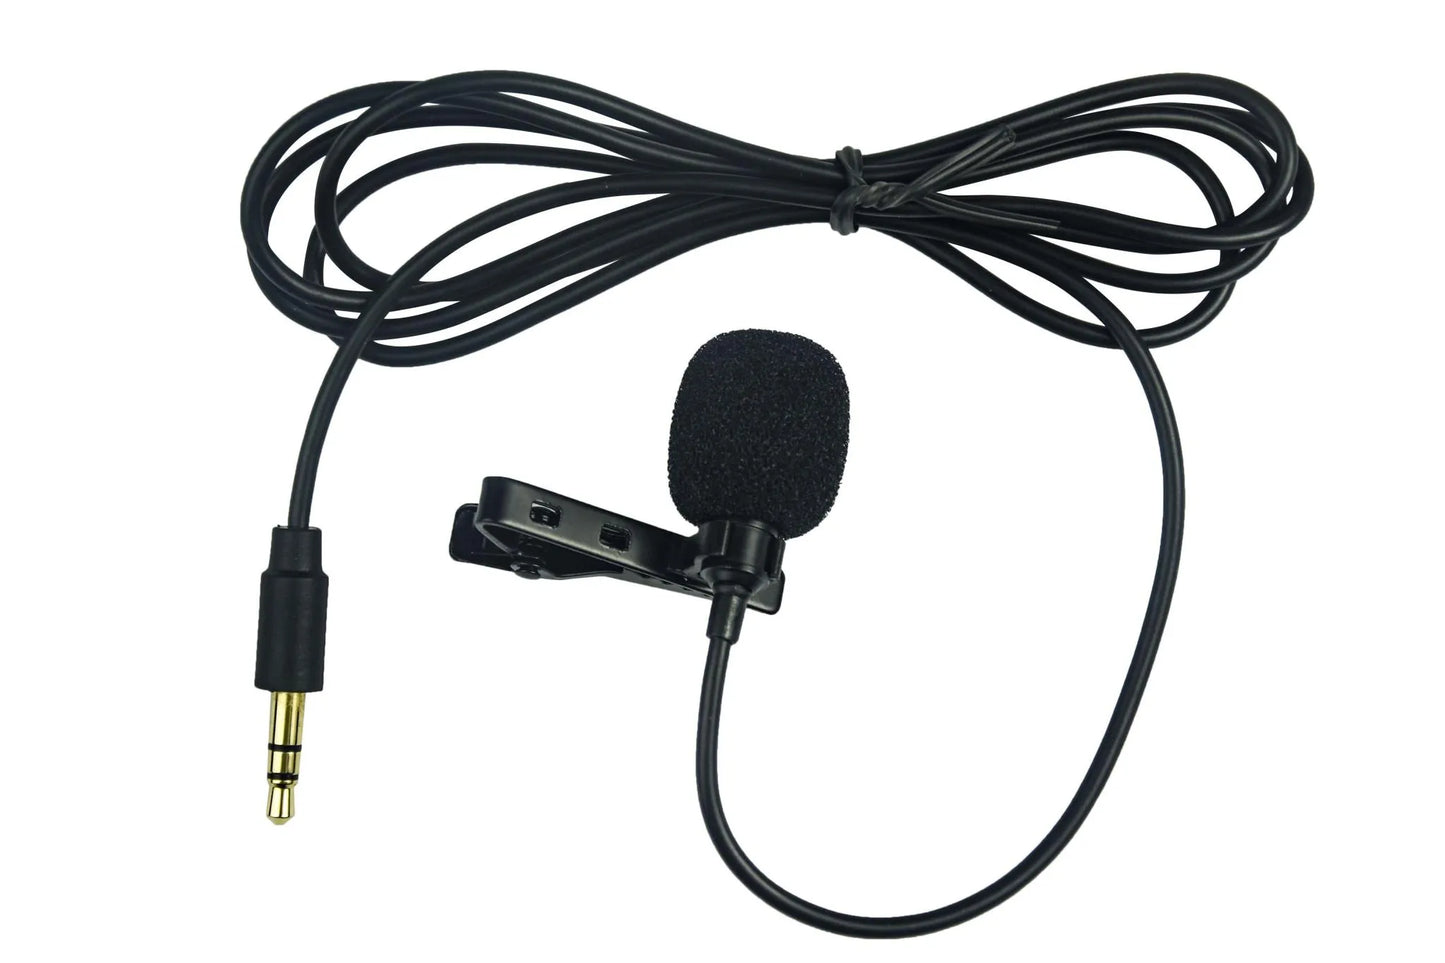 CKMOVA UM100 UHF Wireless Microphone Kit (USB-C Receiver) - ProSound